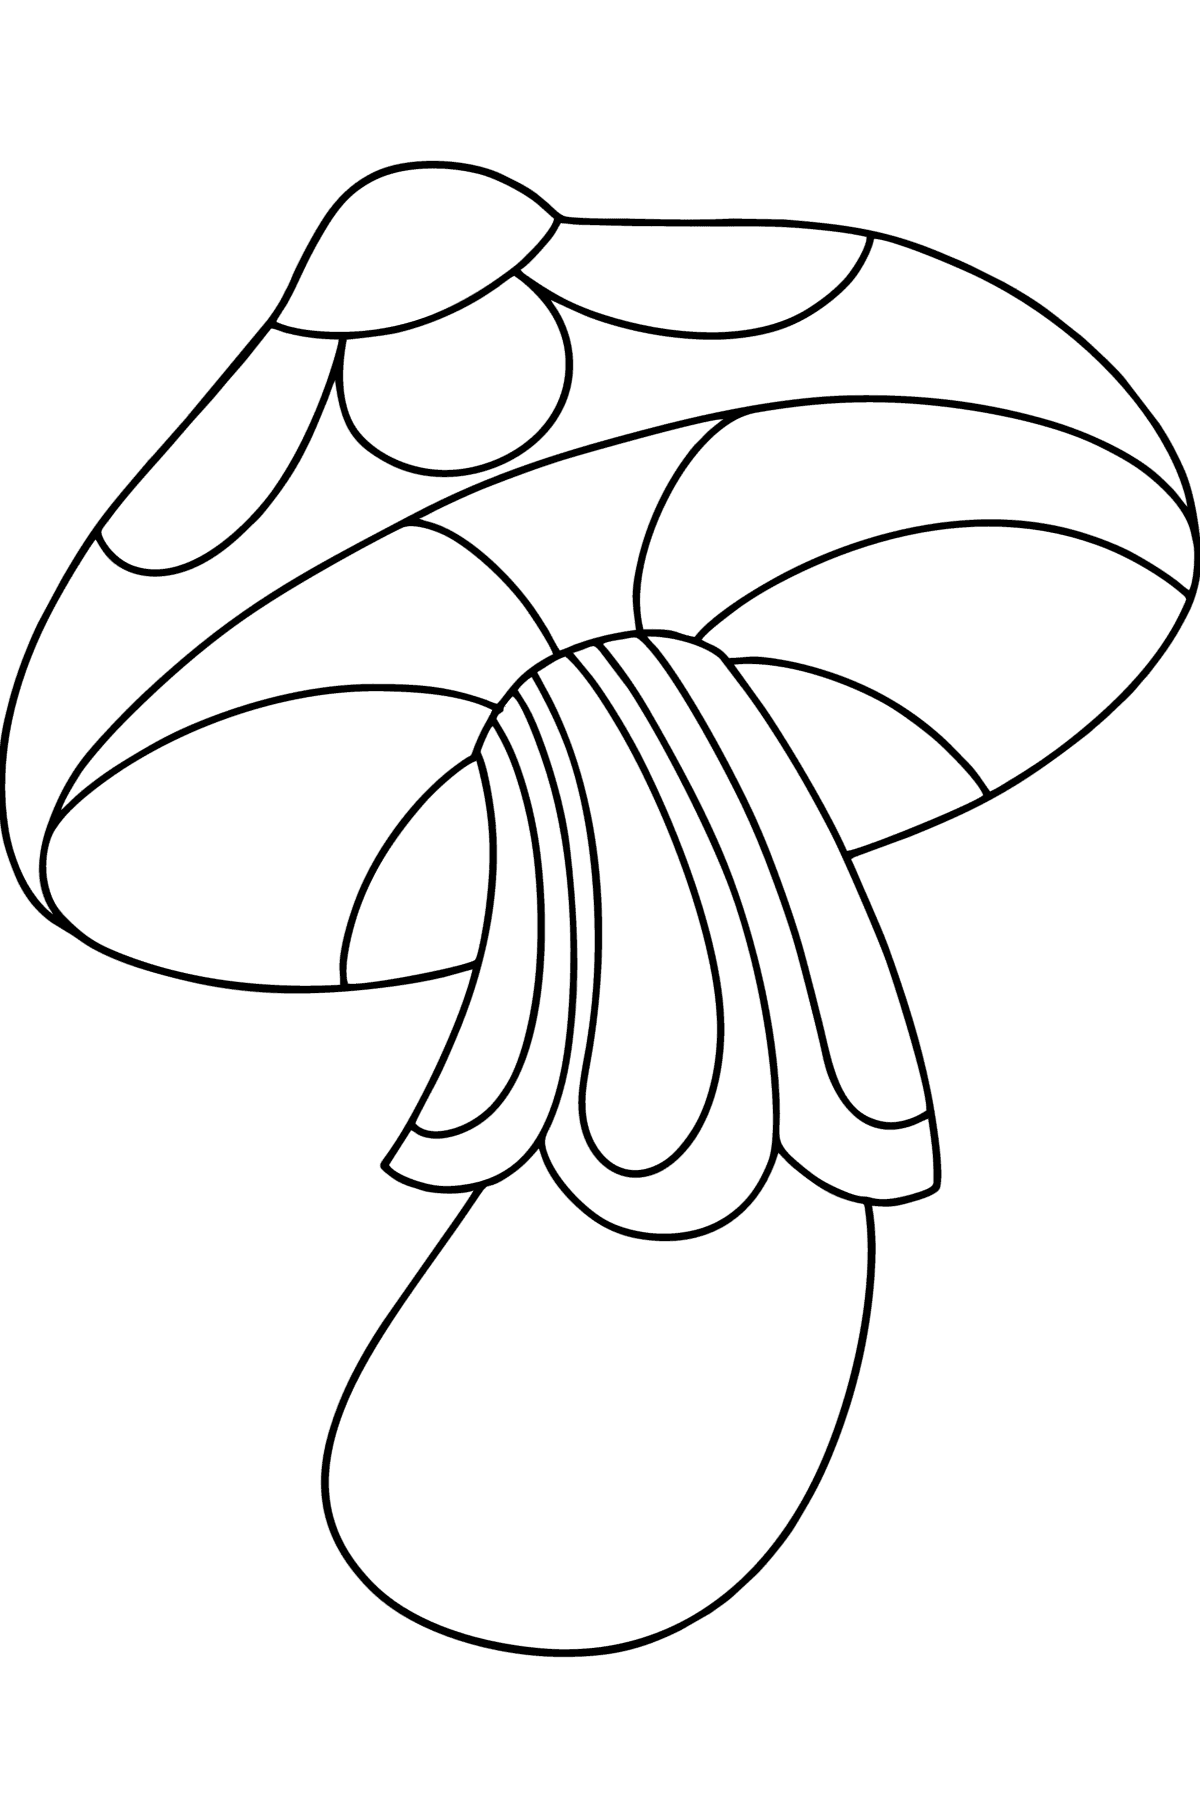 Desenho para colorir de cogumelos Zentangle - Imagens para Colorir para Crianças